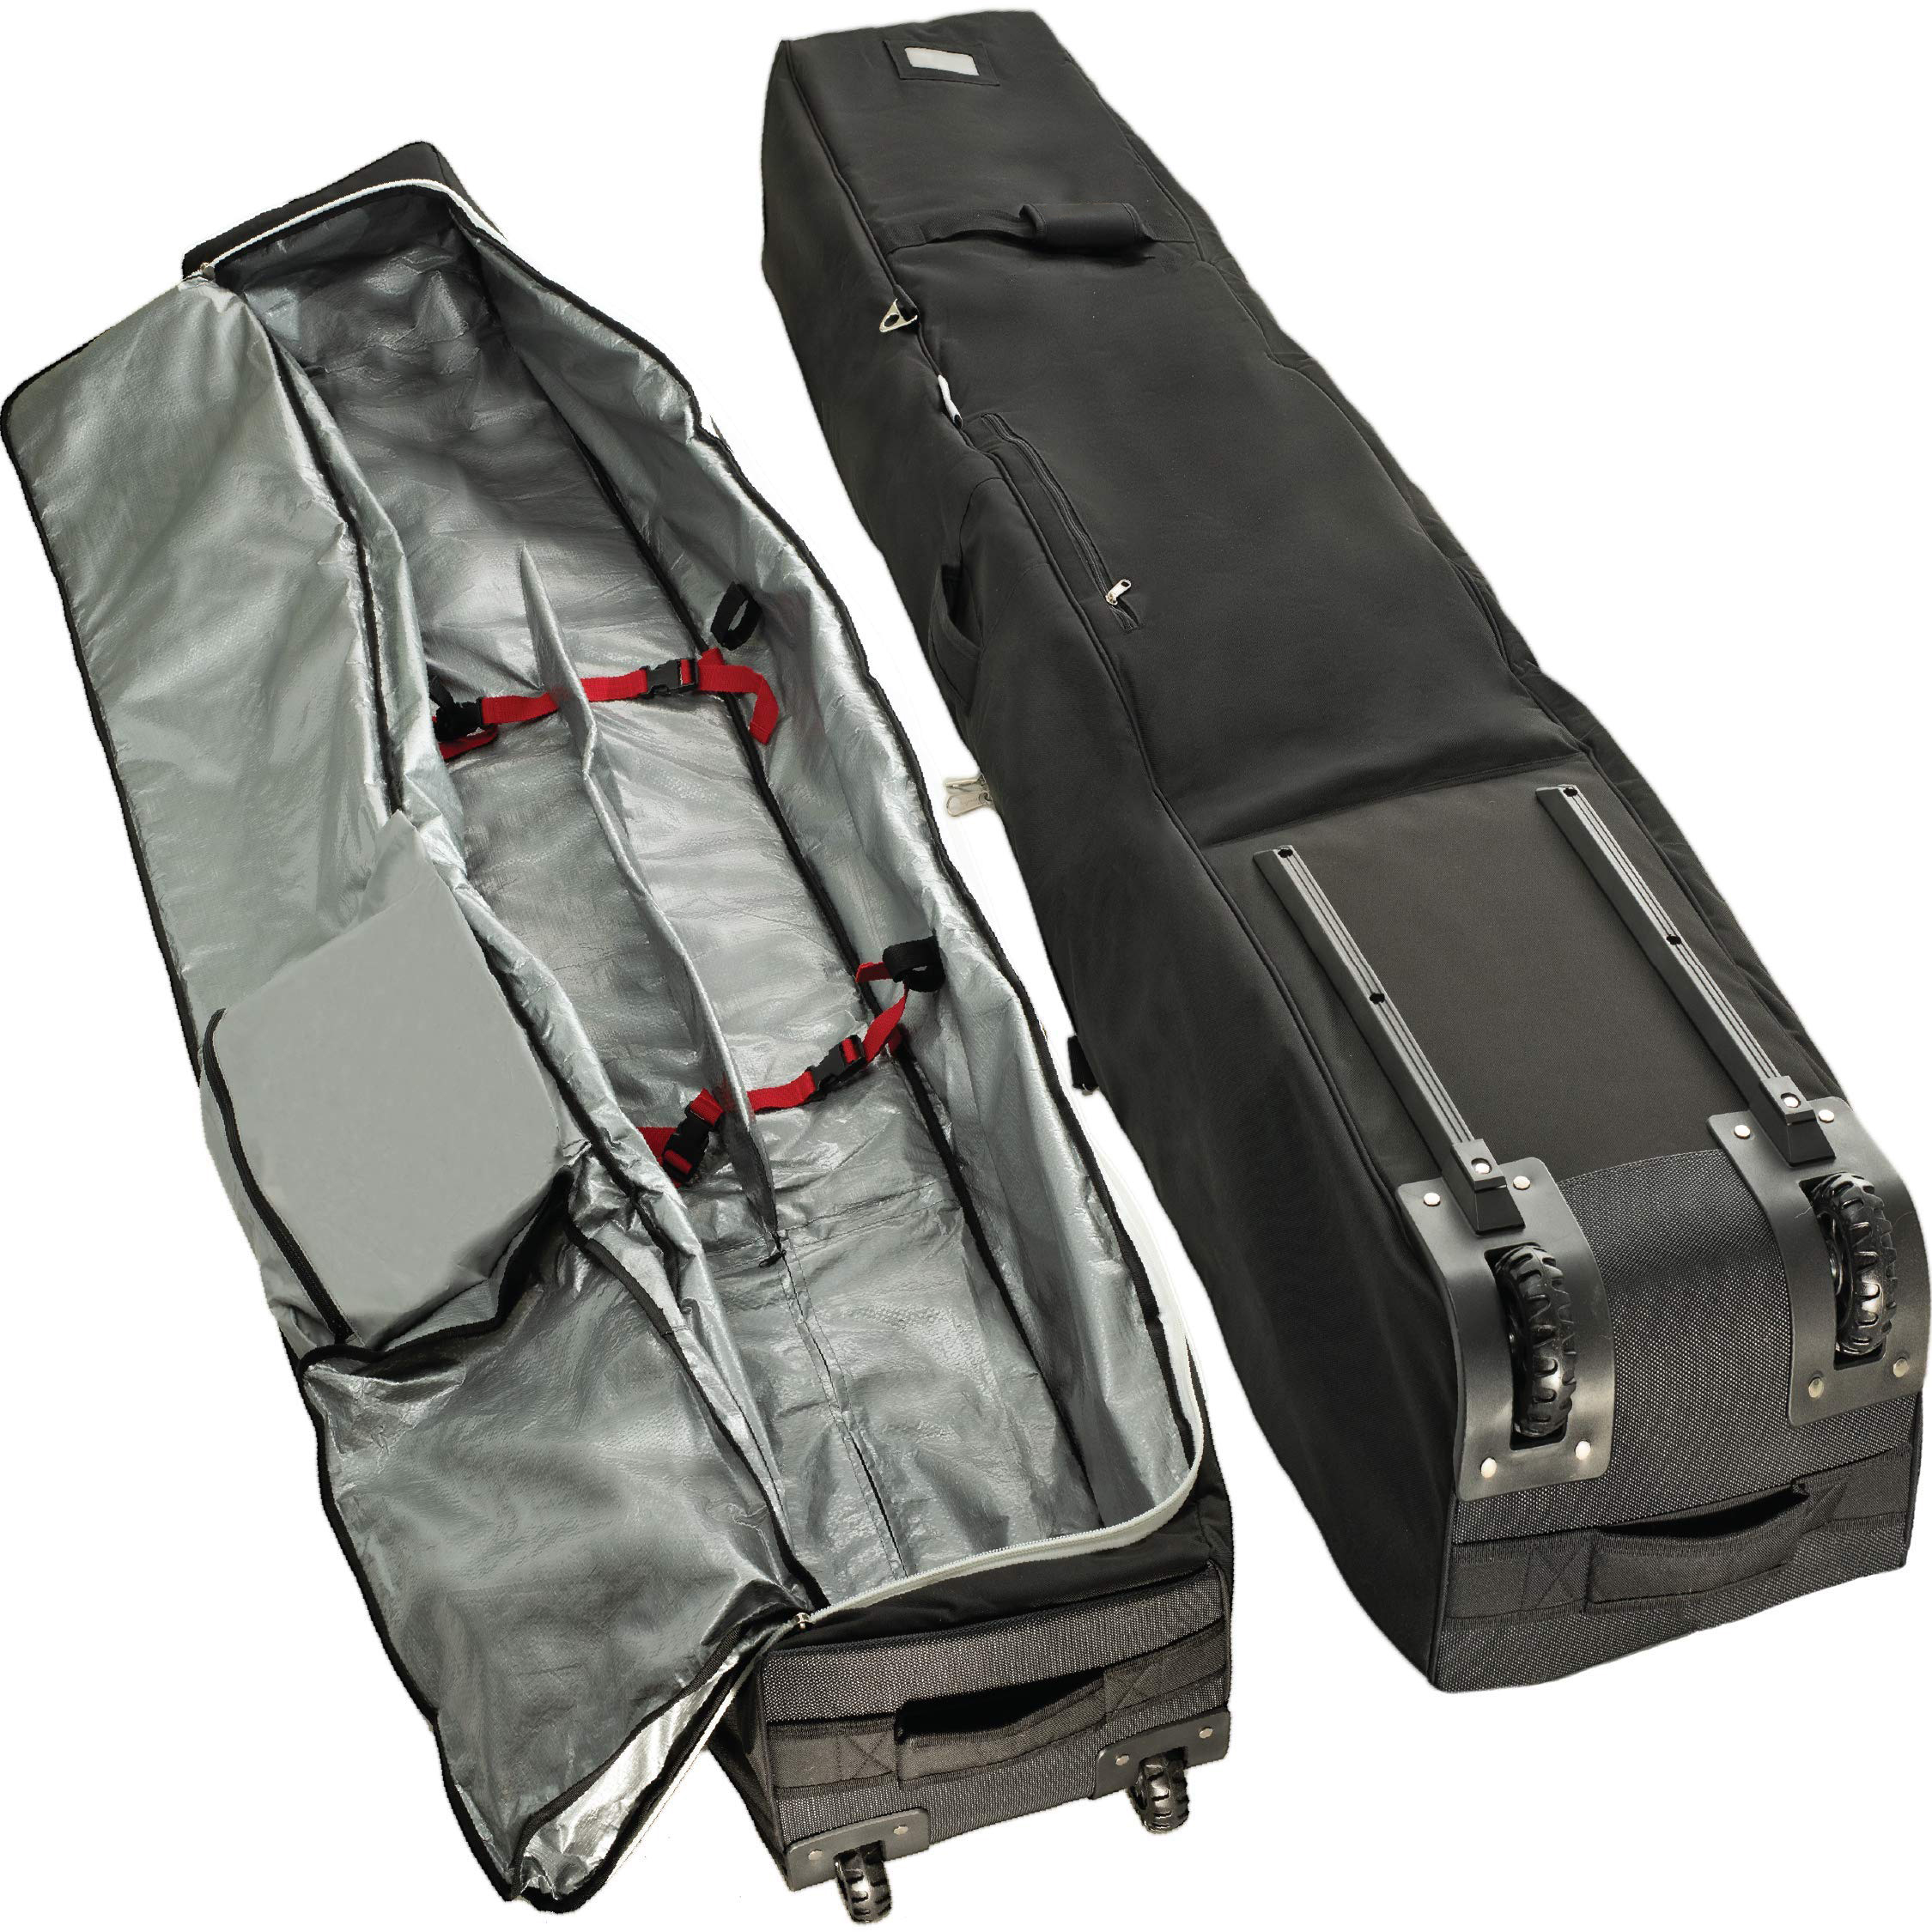 Geeignet für die Reise-Rollen-Skitasche mit Riemenscheibe und gepolsterter, weich gefütterter Skitasche, die individuell angepasst werden kann